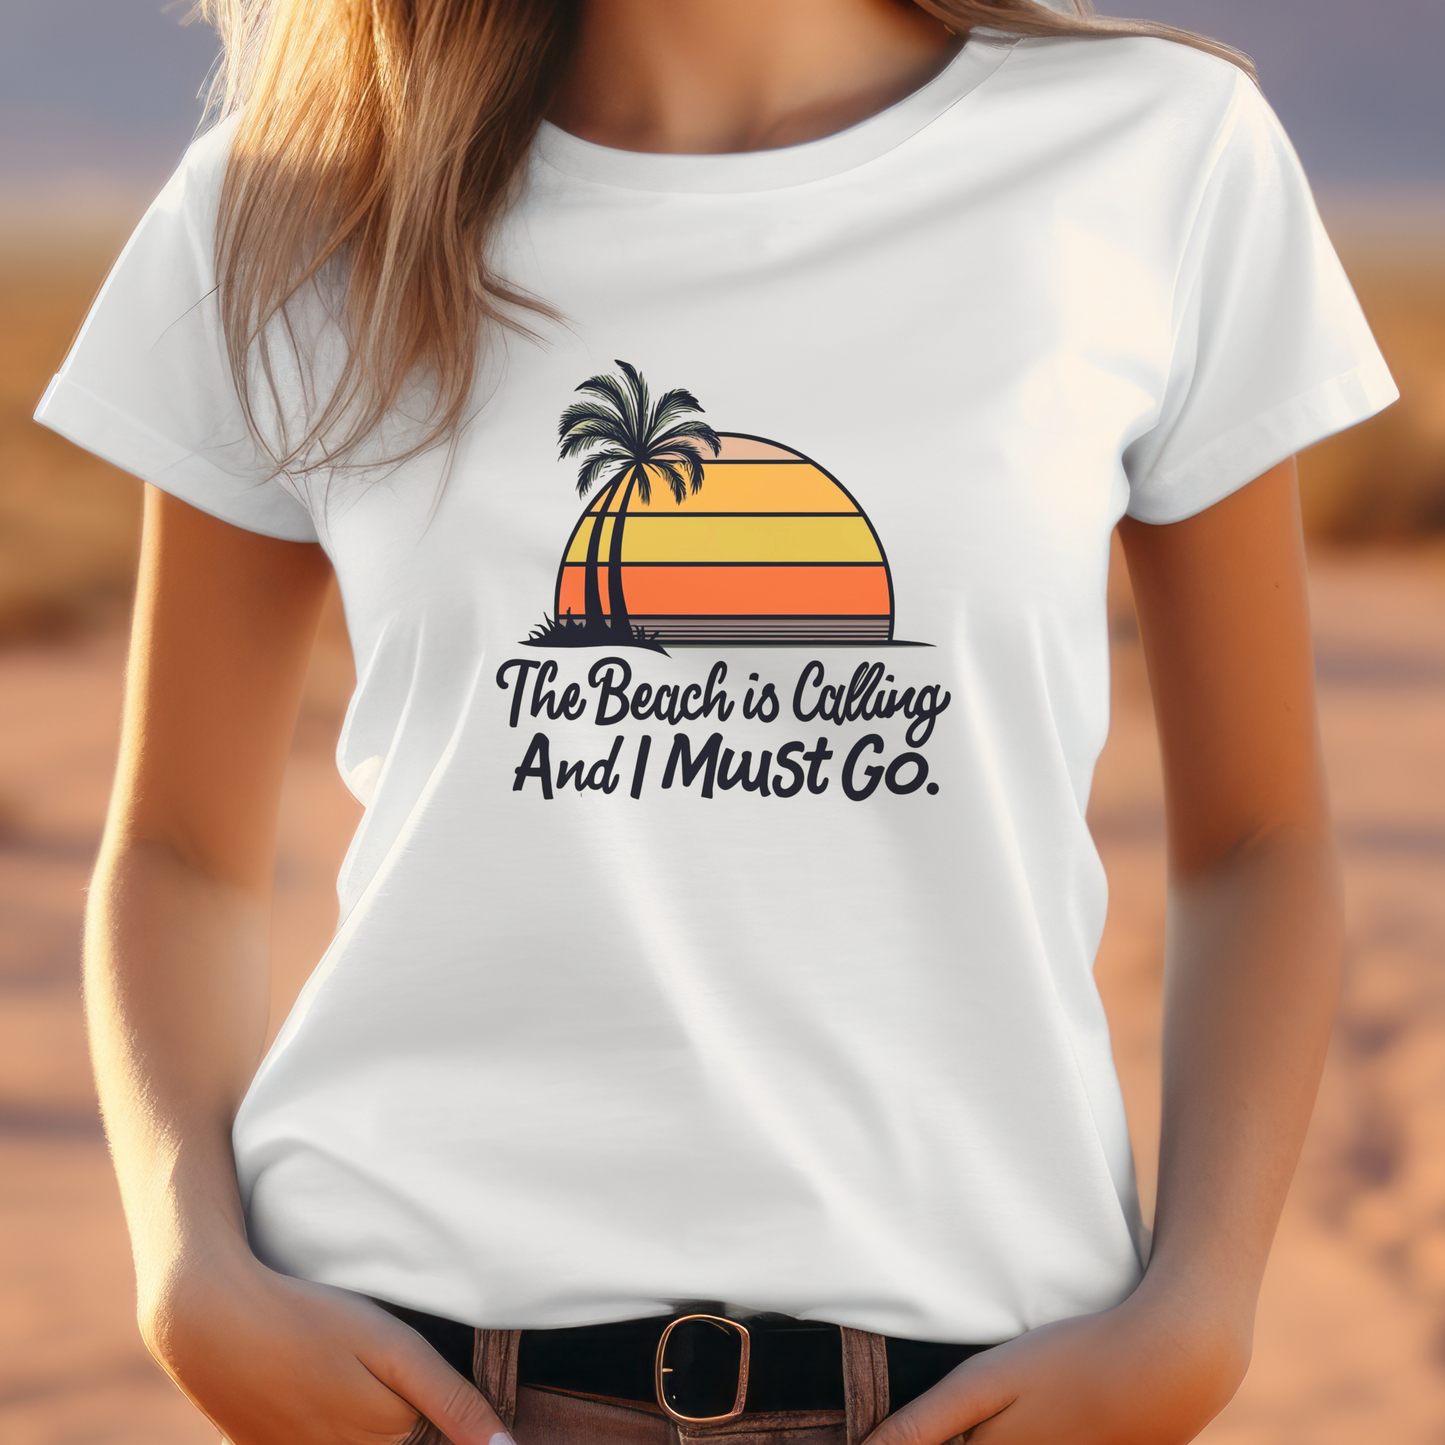 Beach Shirt, Beach Lovers, Surfer Shirt, Summer Vibes, Vacation Shirt - "The Beach is Calling" T-Shirt